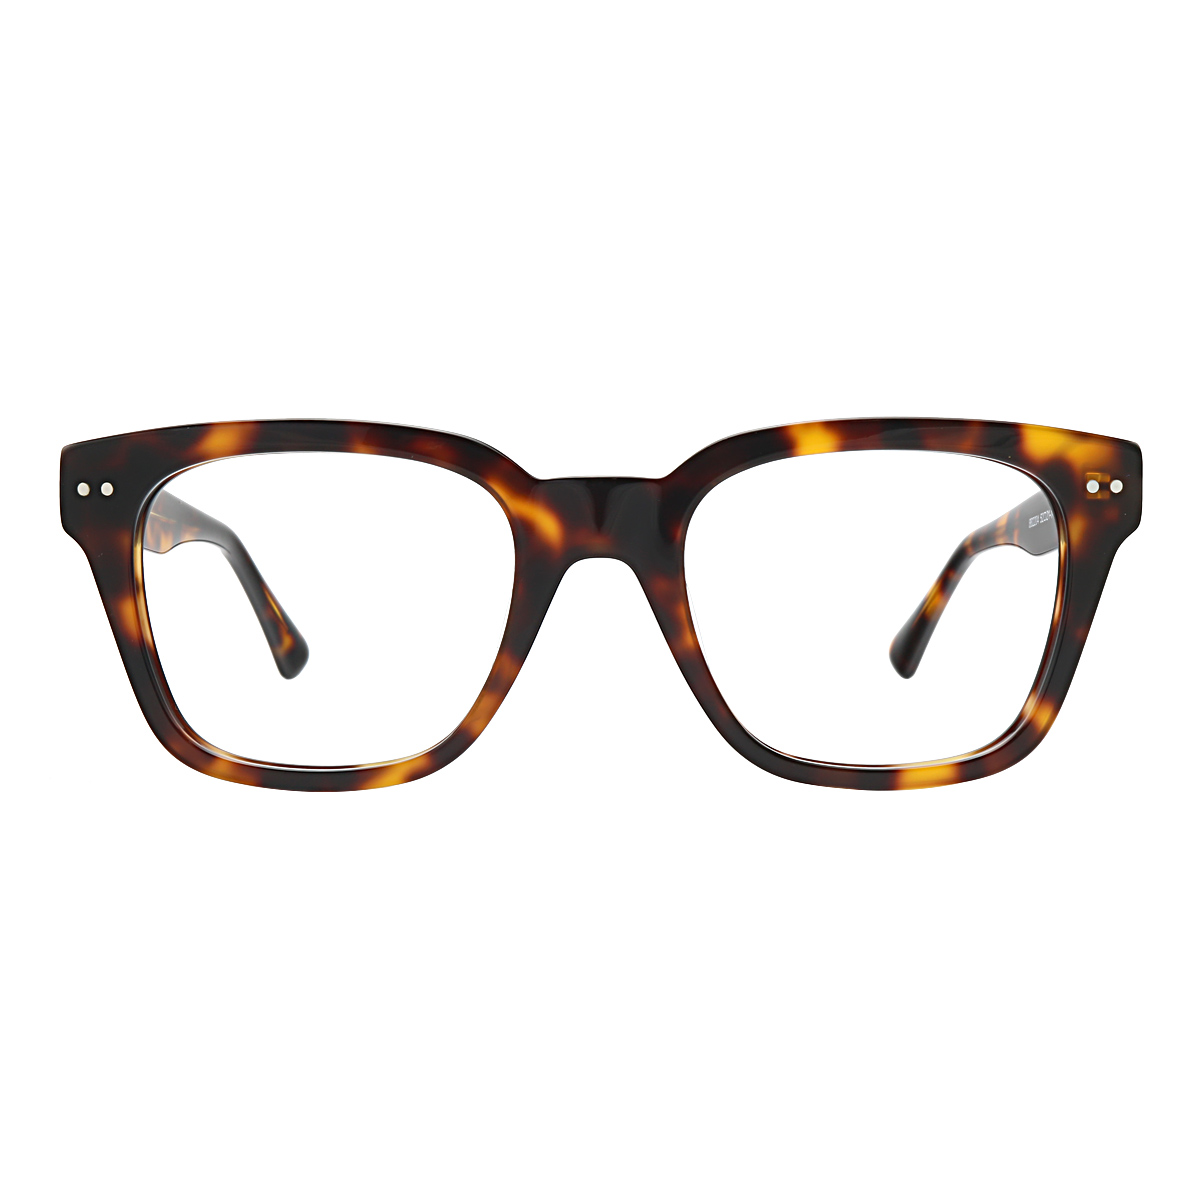 Morty - Square Tortoiseshell Glasses for Men & Women - EFE